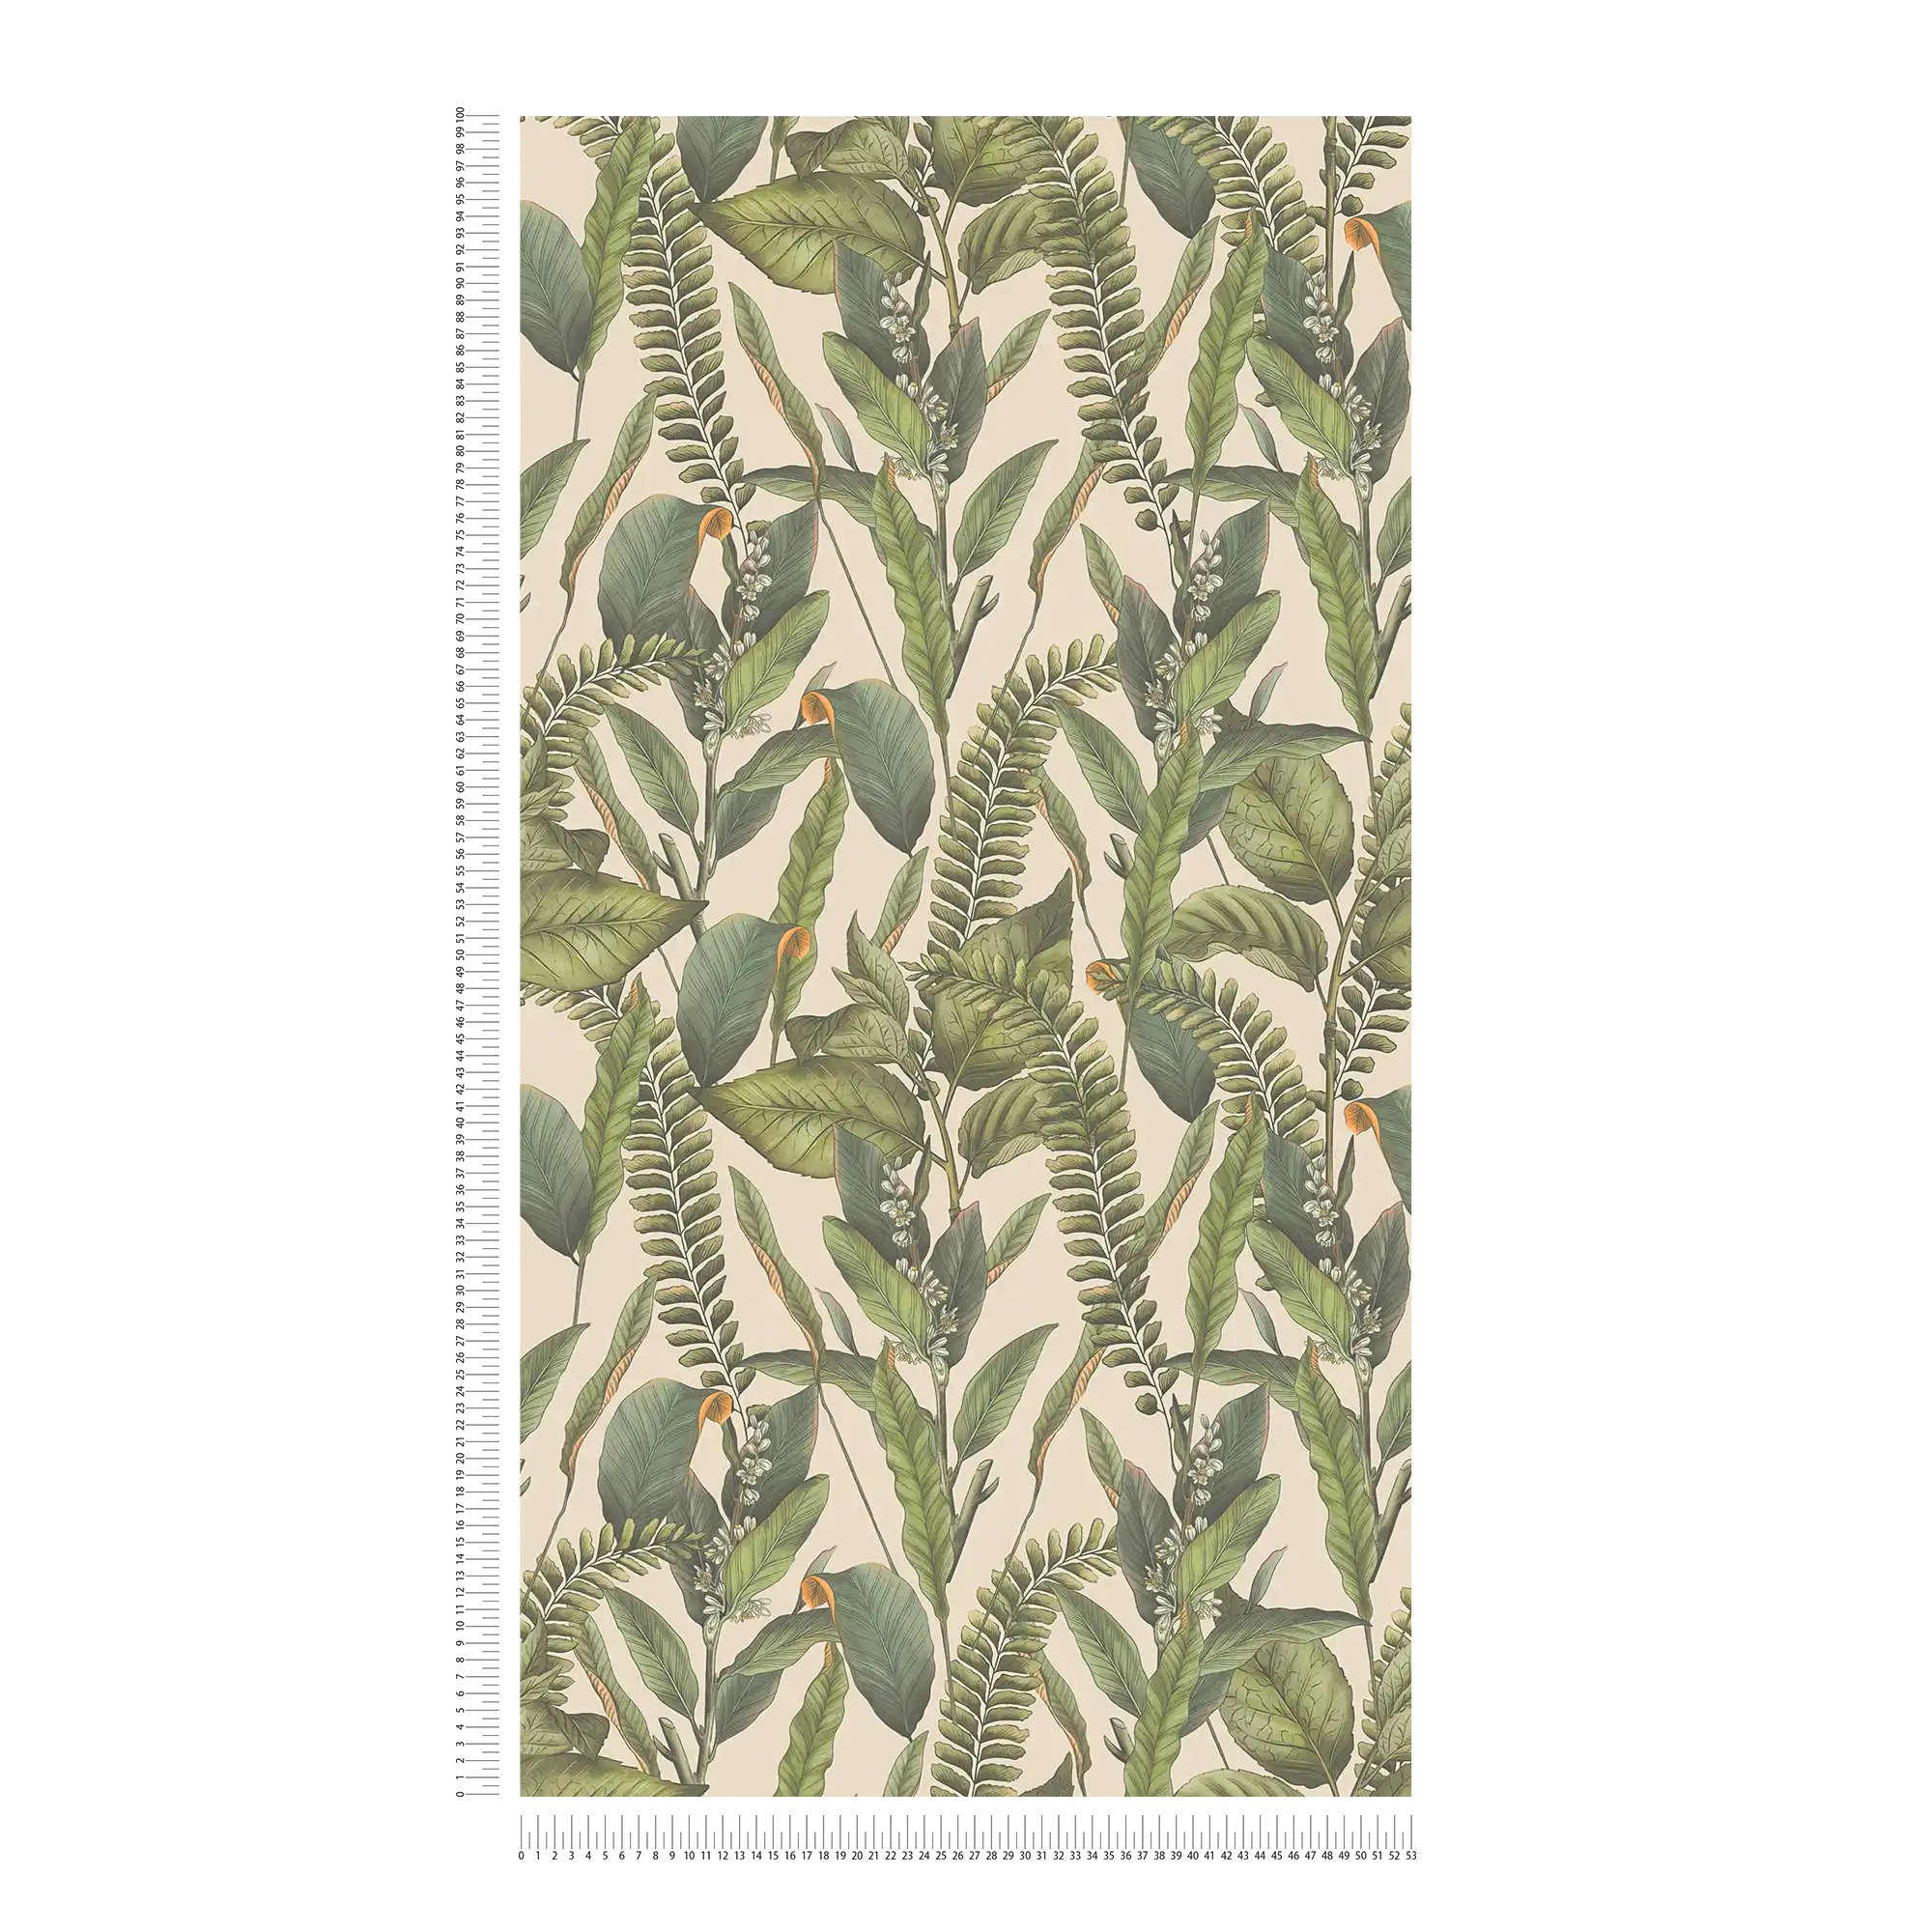             papier peint en papier jungle floral avec feuilles & fleurs structuré mat - crème, vert, orange
        